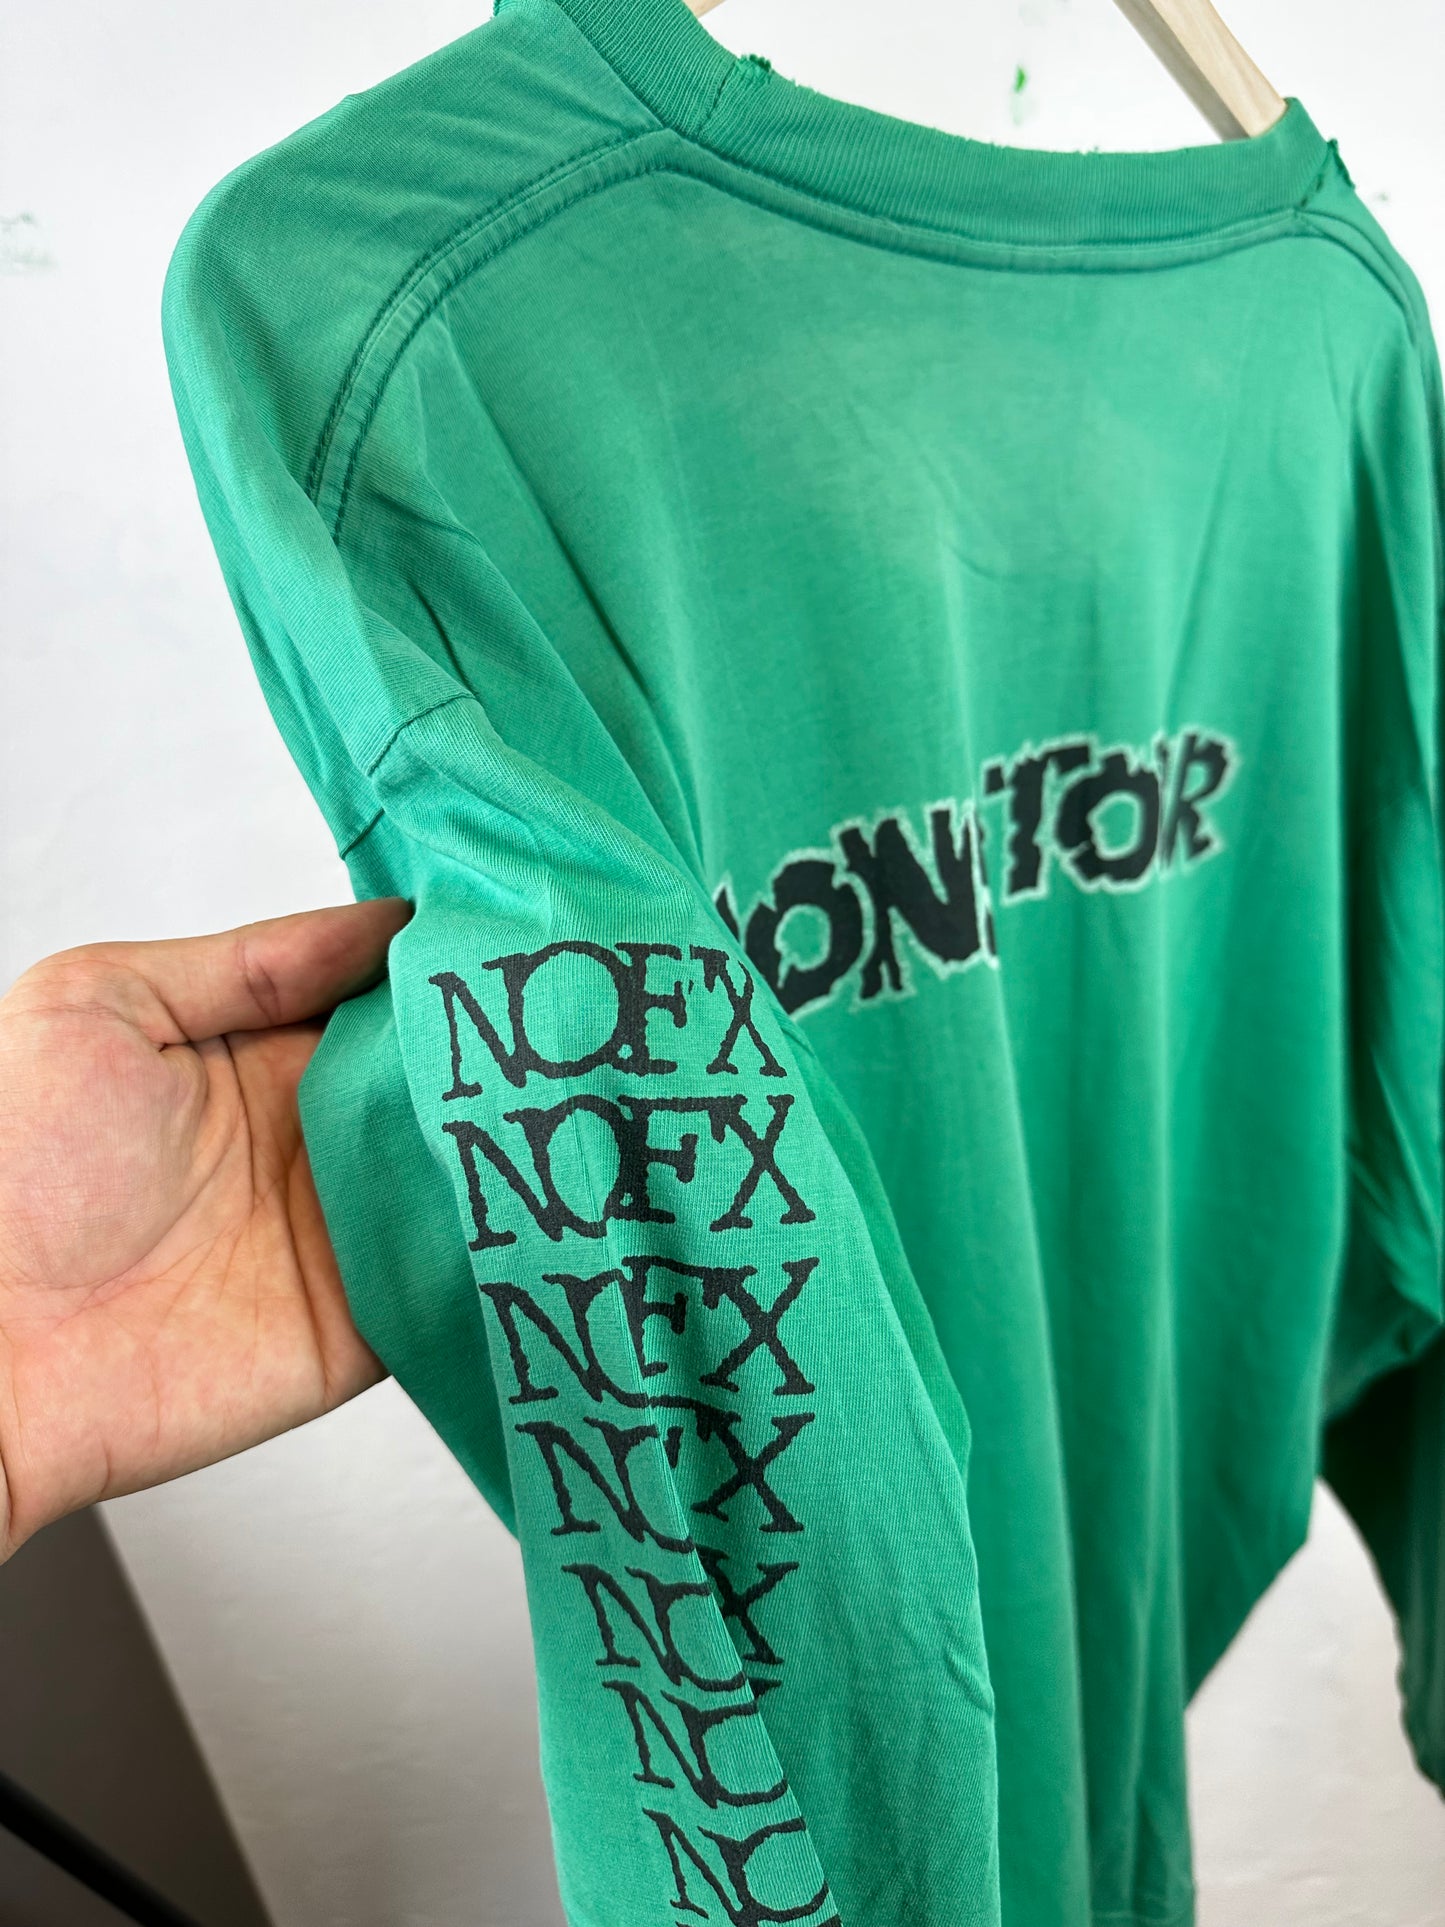 Vintage NOFX Mons-Tour “1995” t-shirt - size XL